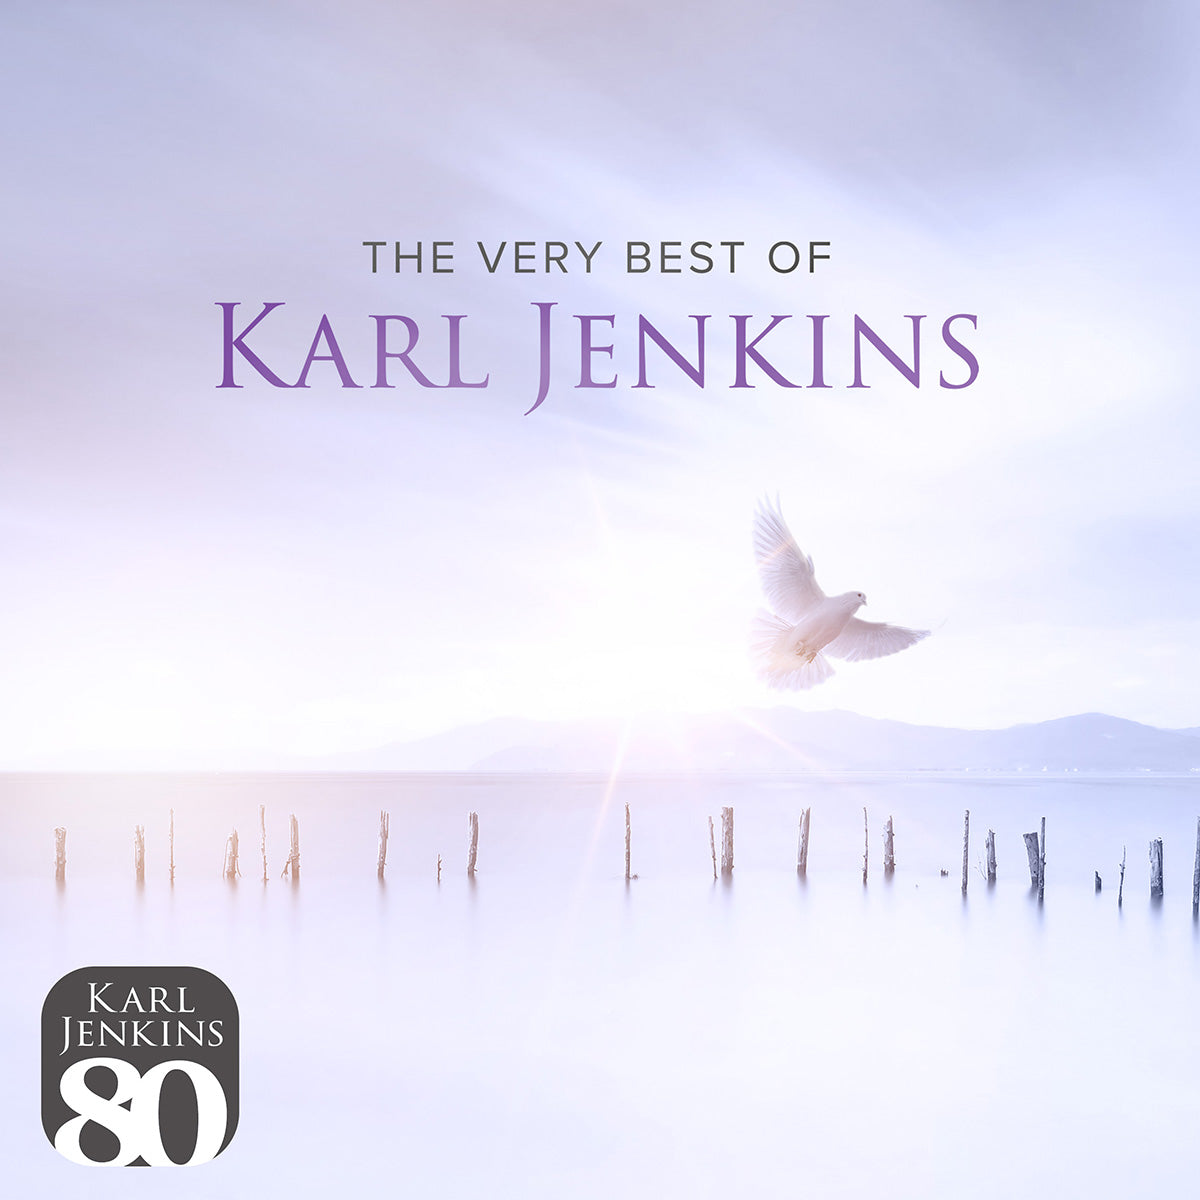 Karl Jenkins - The Very Best Of Karl Jenkins: LP - Sound of Vinyl